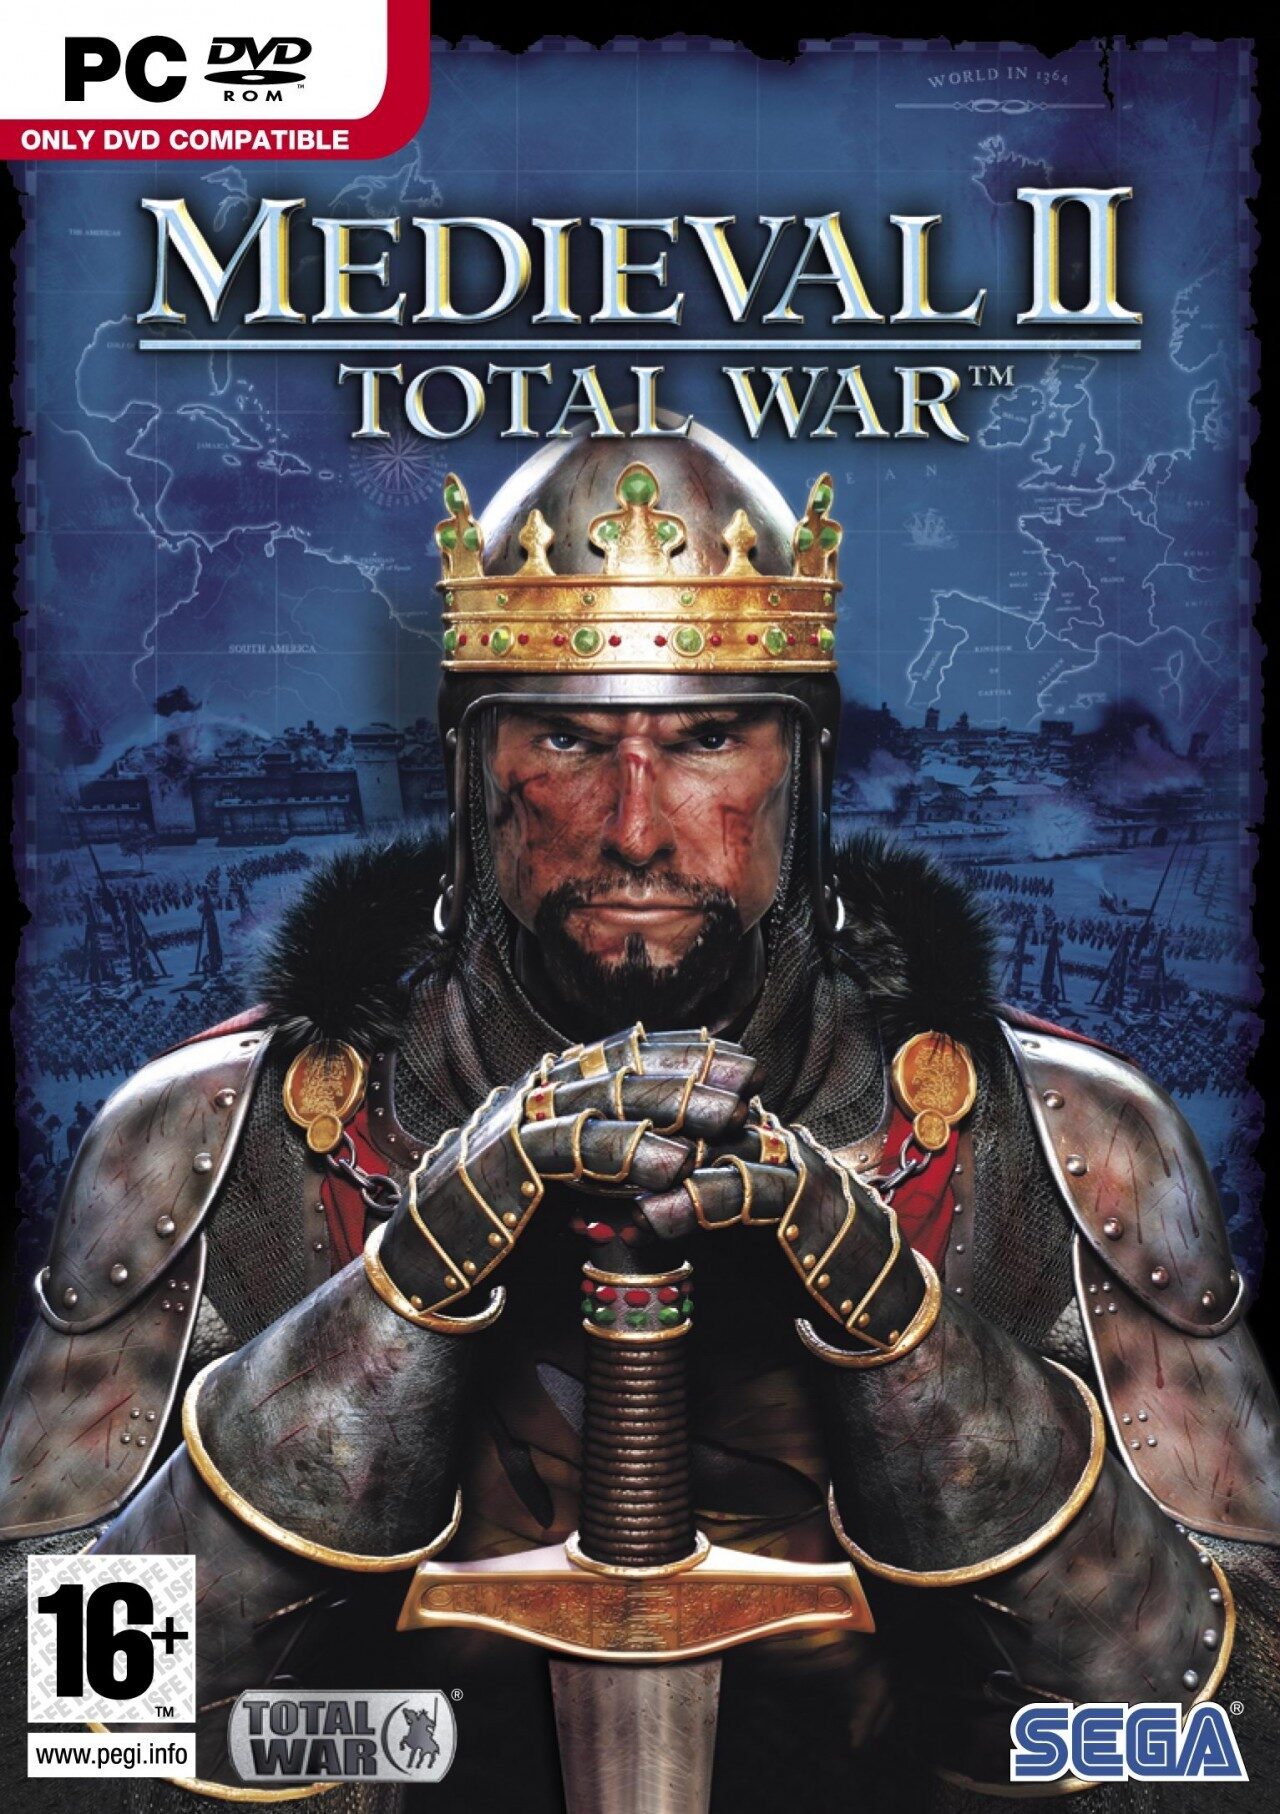 medieval-ii-total-war-crack-download-cover-7610787